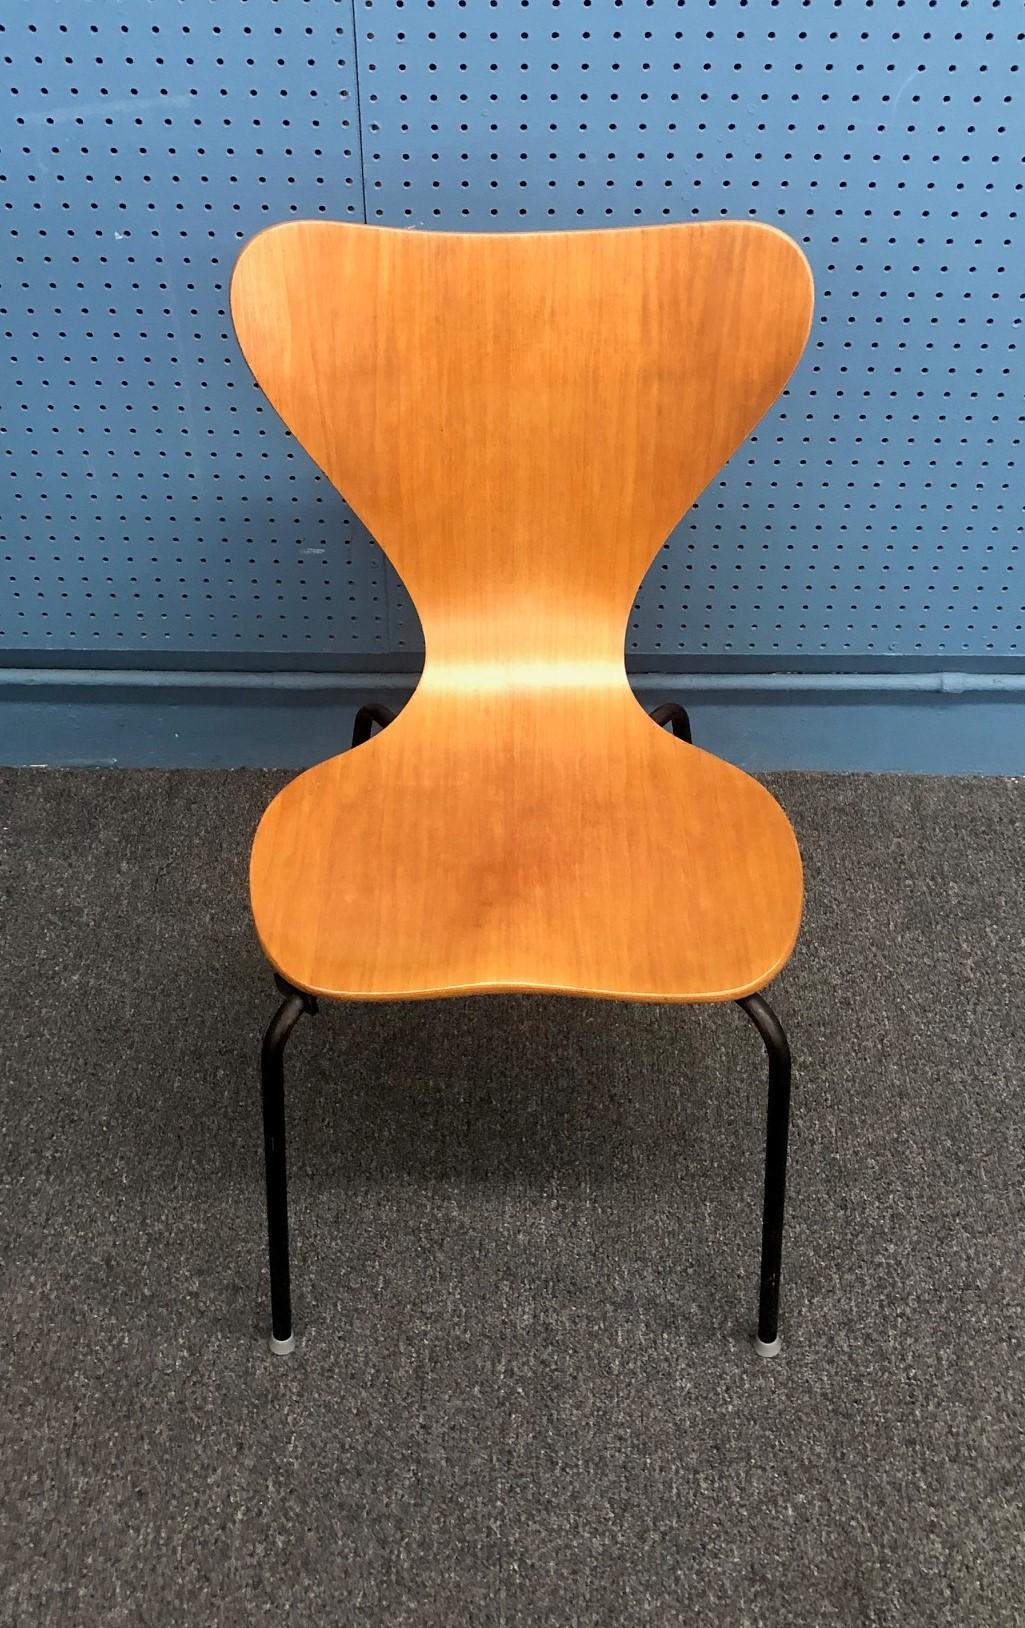 Une très rare chaise moderne danoise en teck par Herbert Hirche pour Jofa Stalmobler, vers les années 1950. La chaise a été fabriquée au Danemark en contreplaqué épais avec placage de teck ; la base est en acier tubulaire peint en noir. La pièce est